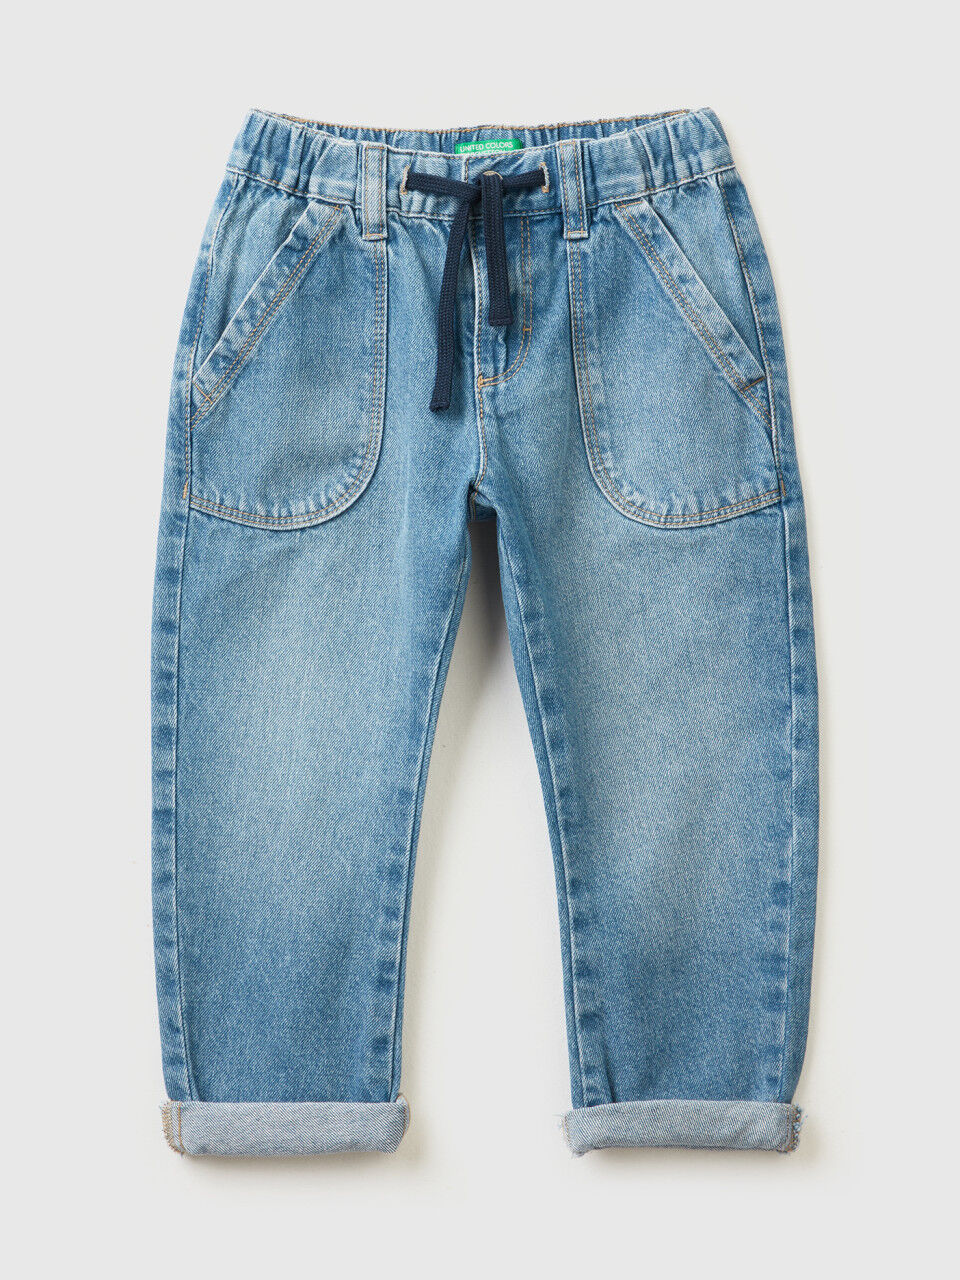 Jeans 100% algodão com maxi bolsos